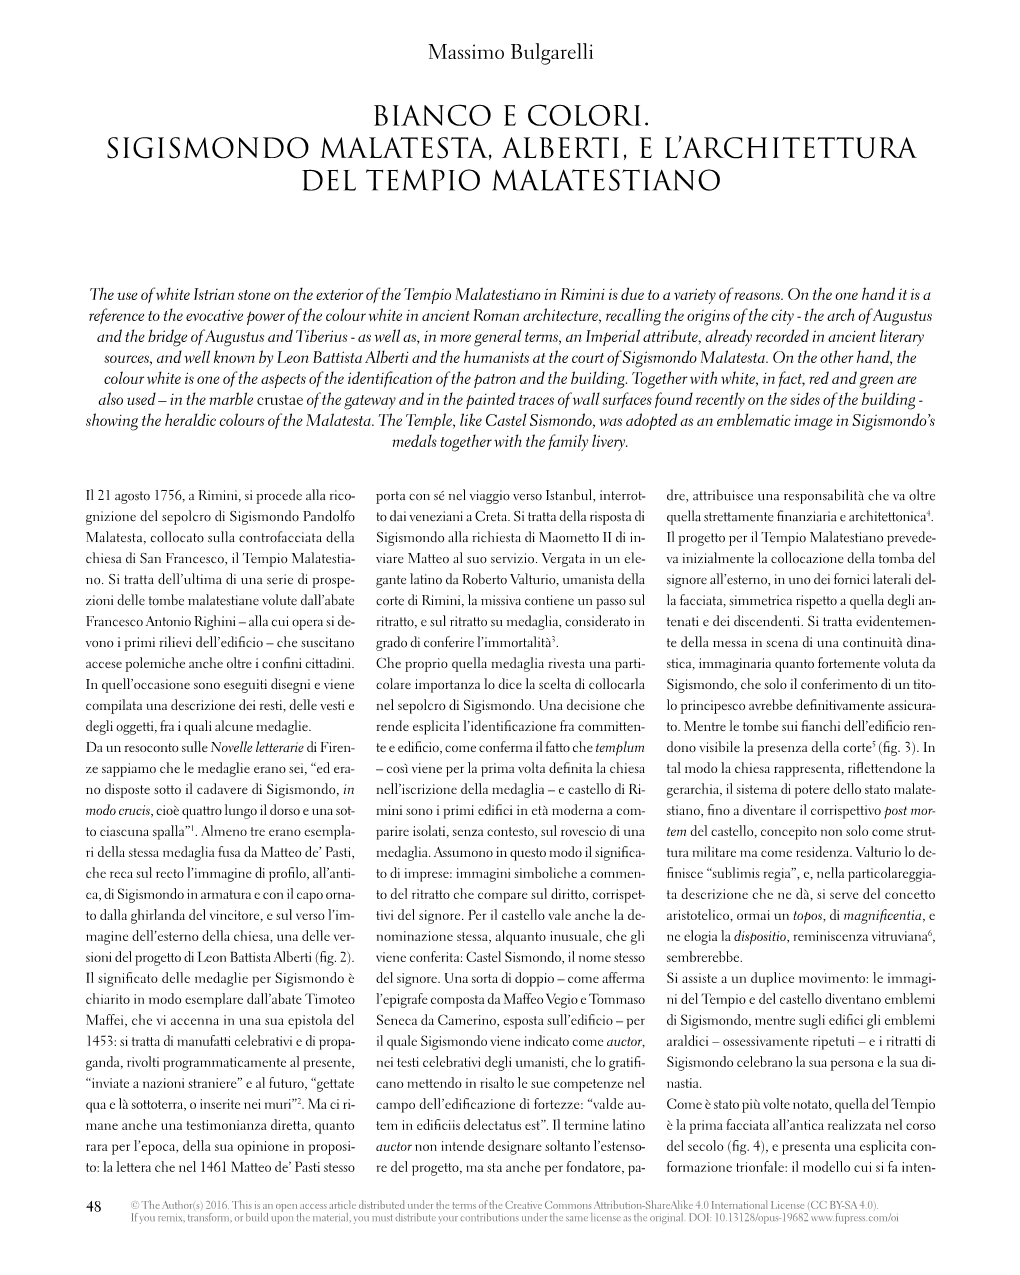 Bianco E Colori. Sigismondo Malatesta, Alberti, E L'architettura Del